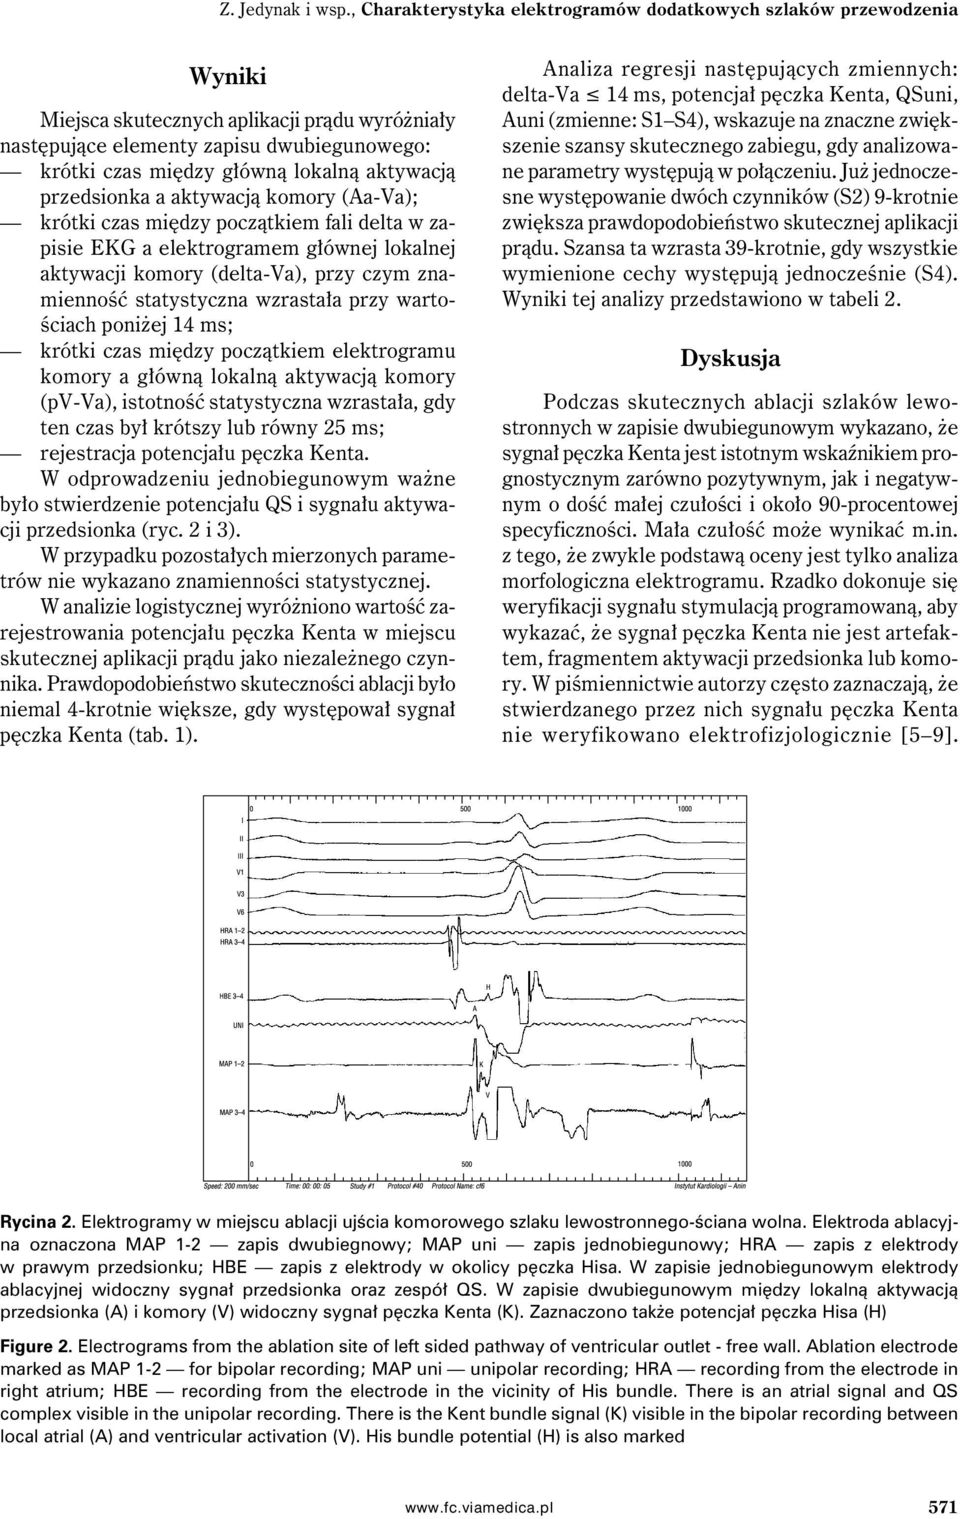 aktywacją przedsionka a aktywacją komory (Aa-Va); krótki czas między początkiem fali delta w zapisie EKG a elektrogramem głównej lokalnej aktywacji komory (delta-va), przy czym znamienność